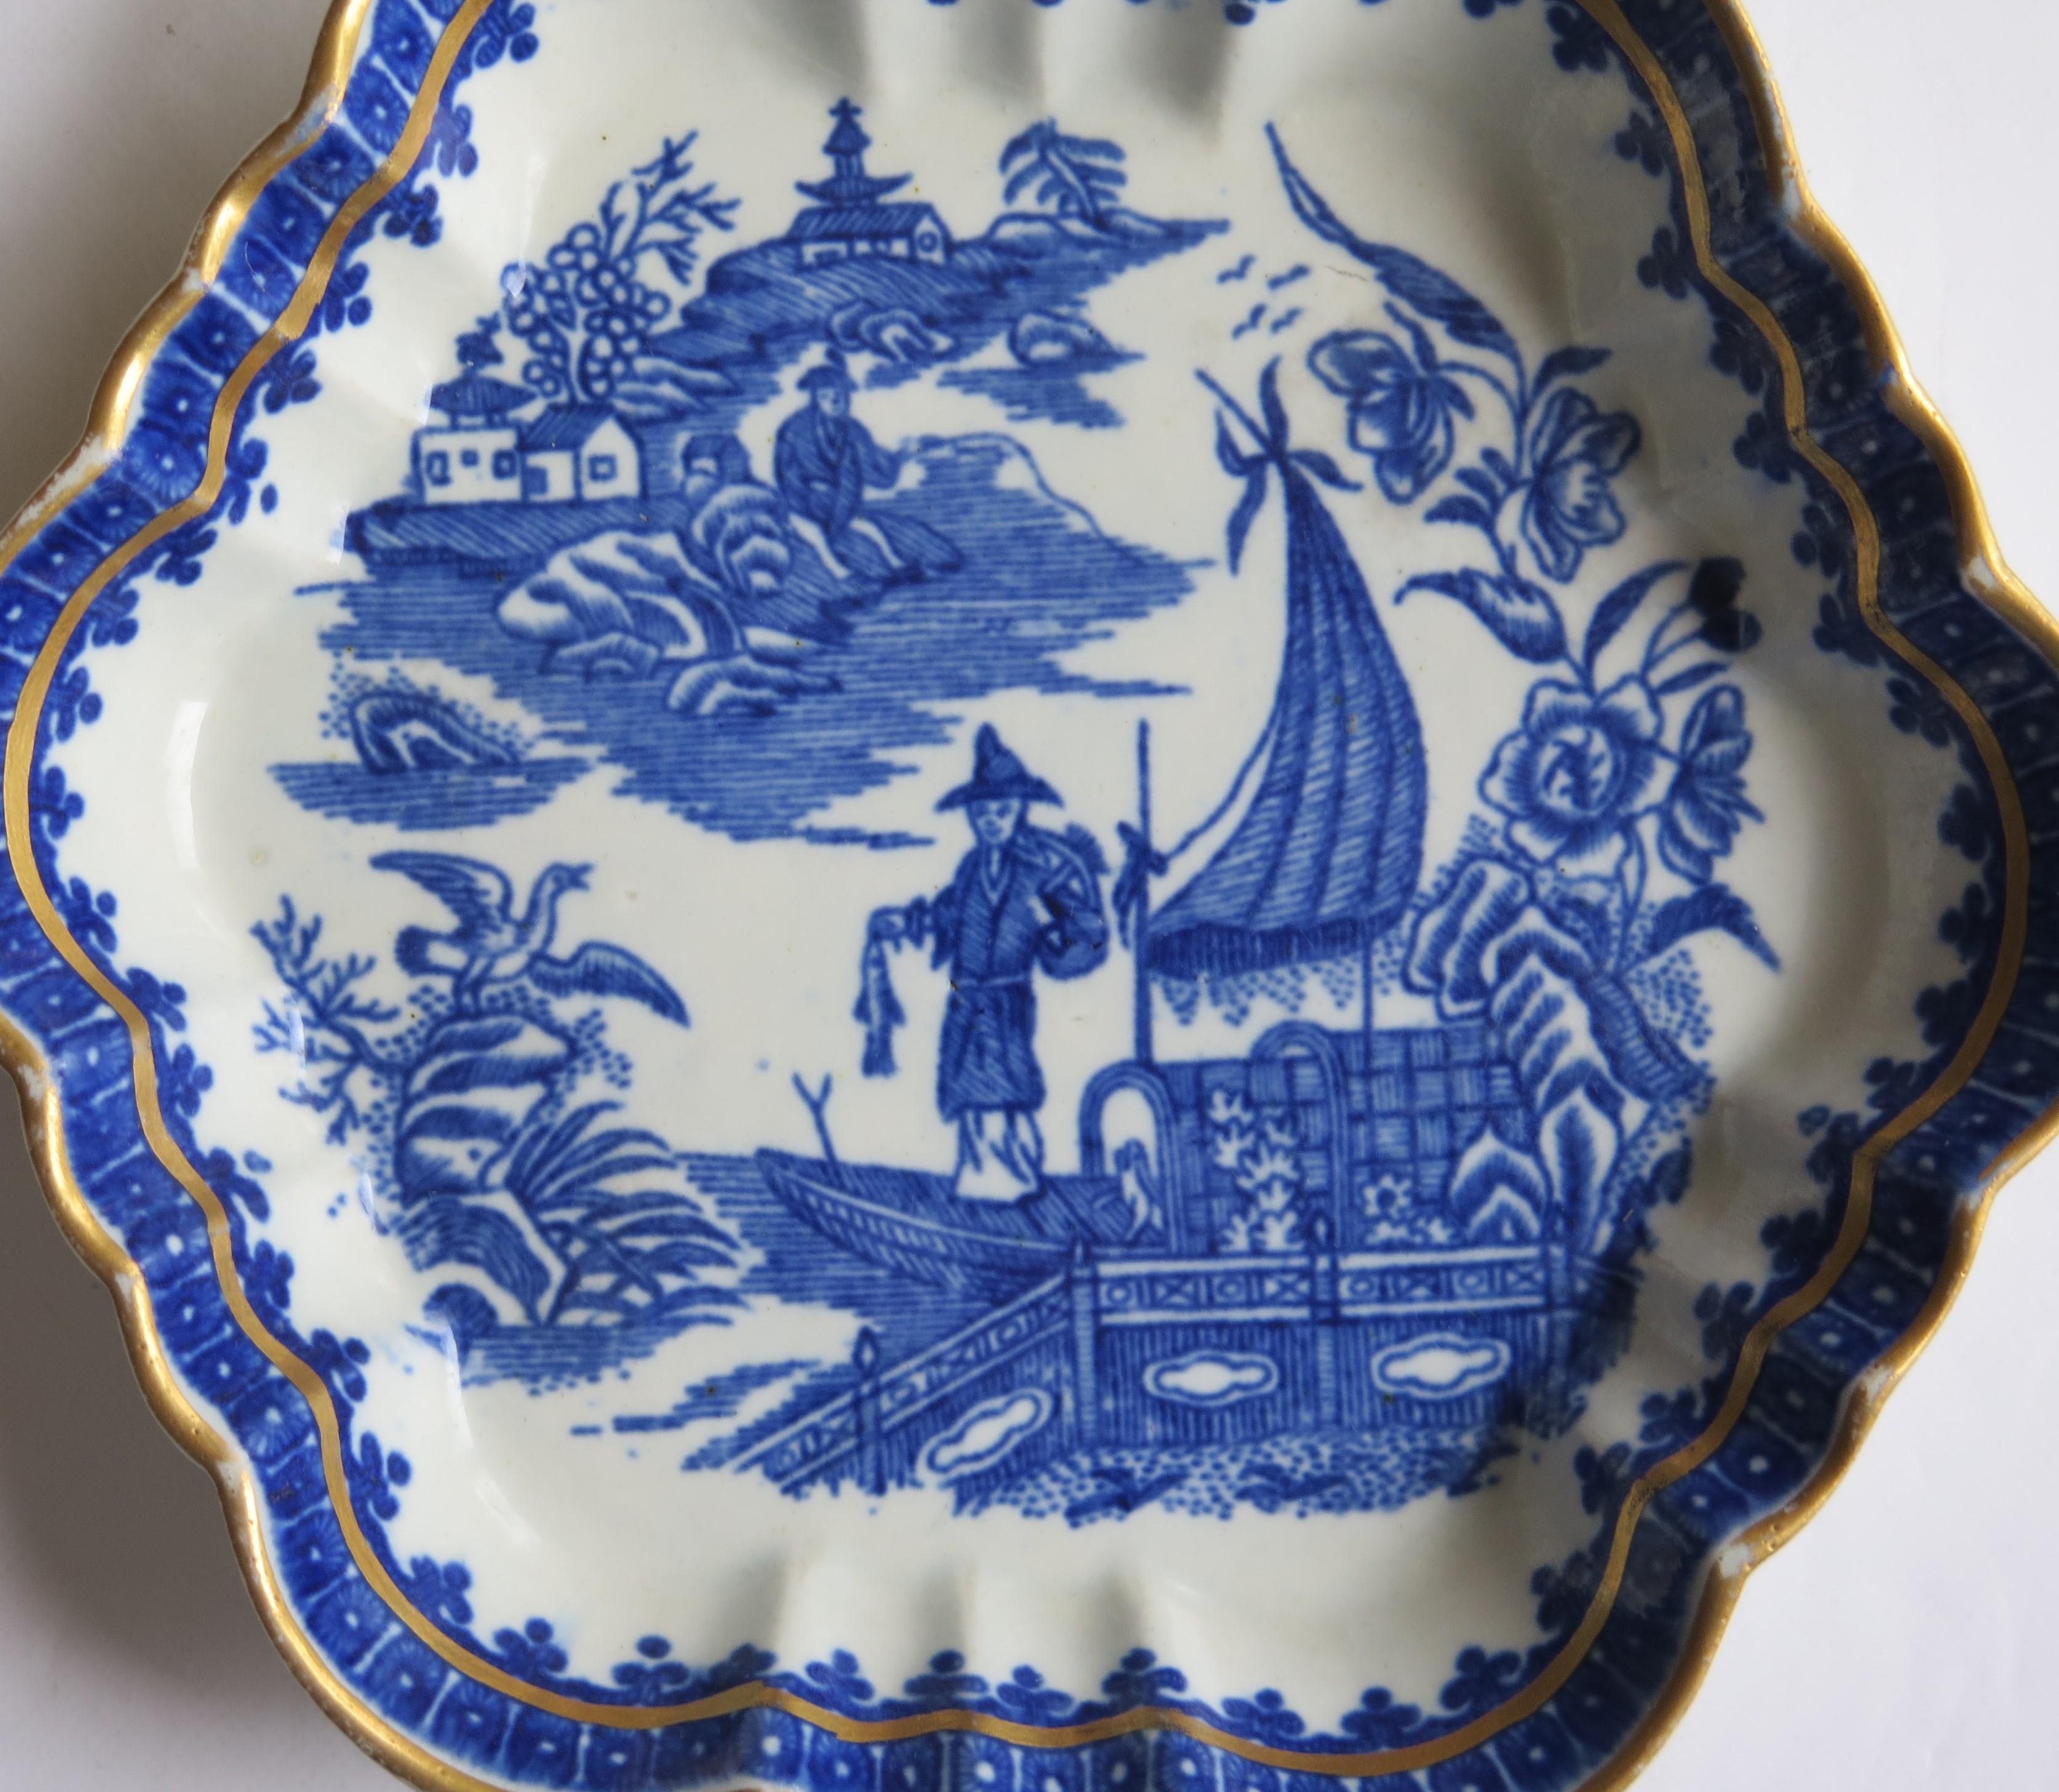 Dies ist eine sehr gute 18. Jahrhundert, Erste Periode (Dr. Wall), Worcester Porzellan Teekannenständer, in Kobaltblau mit dem 